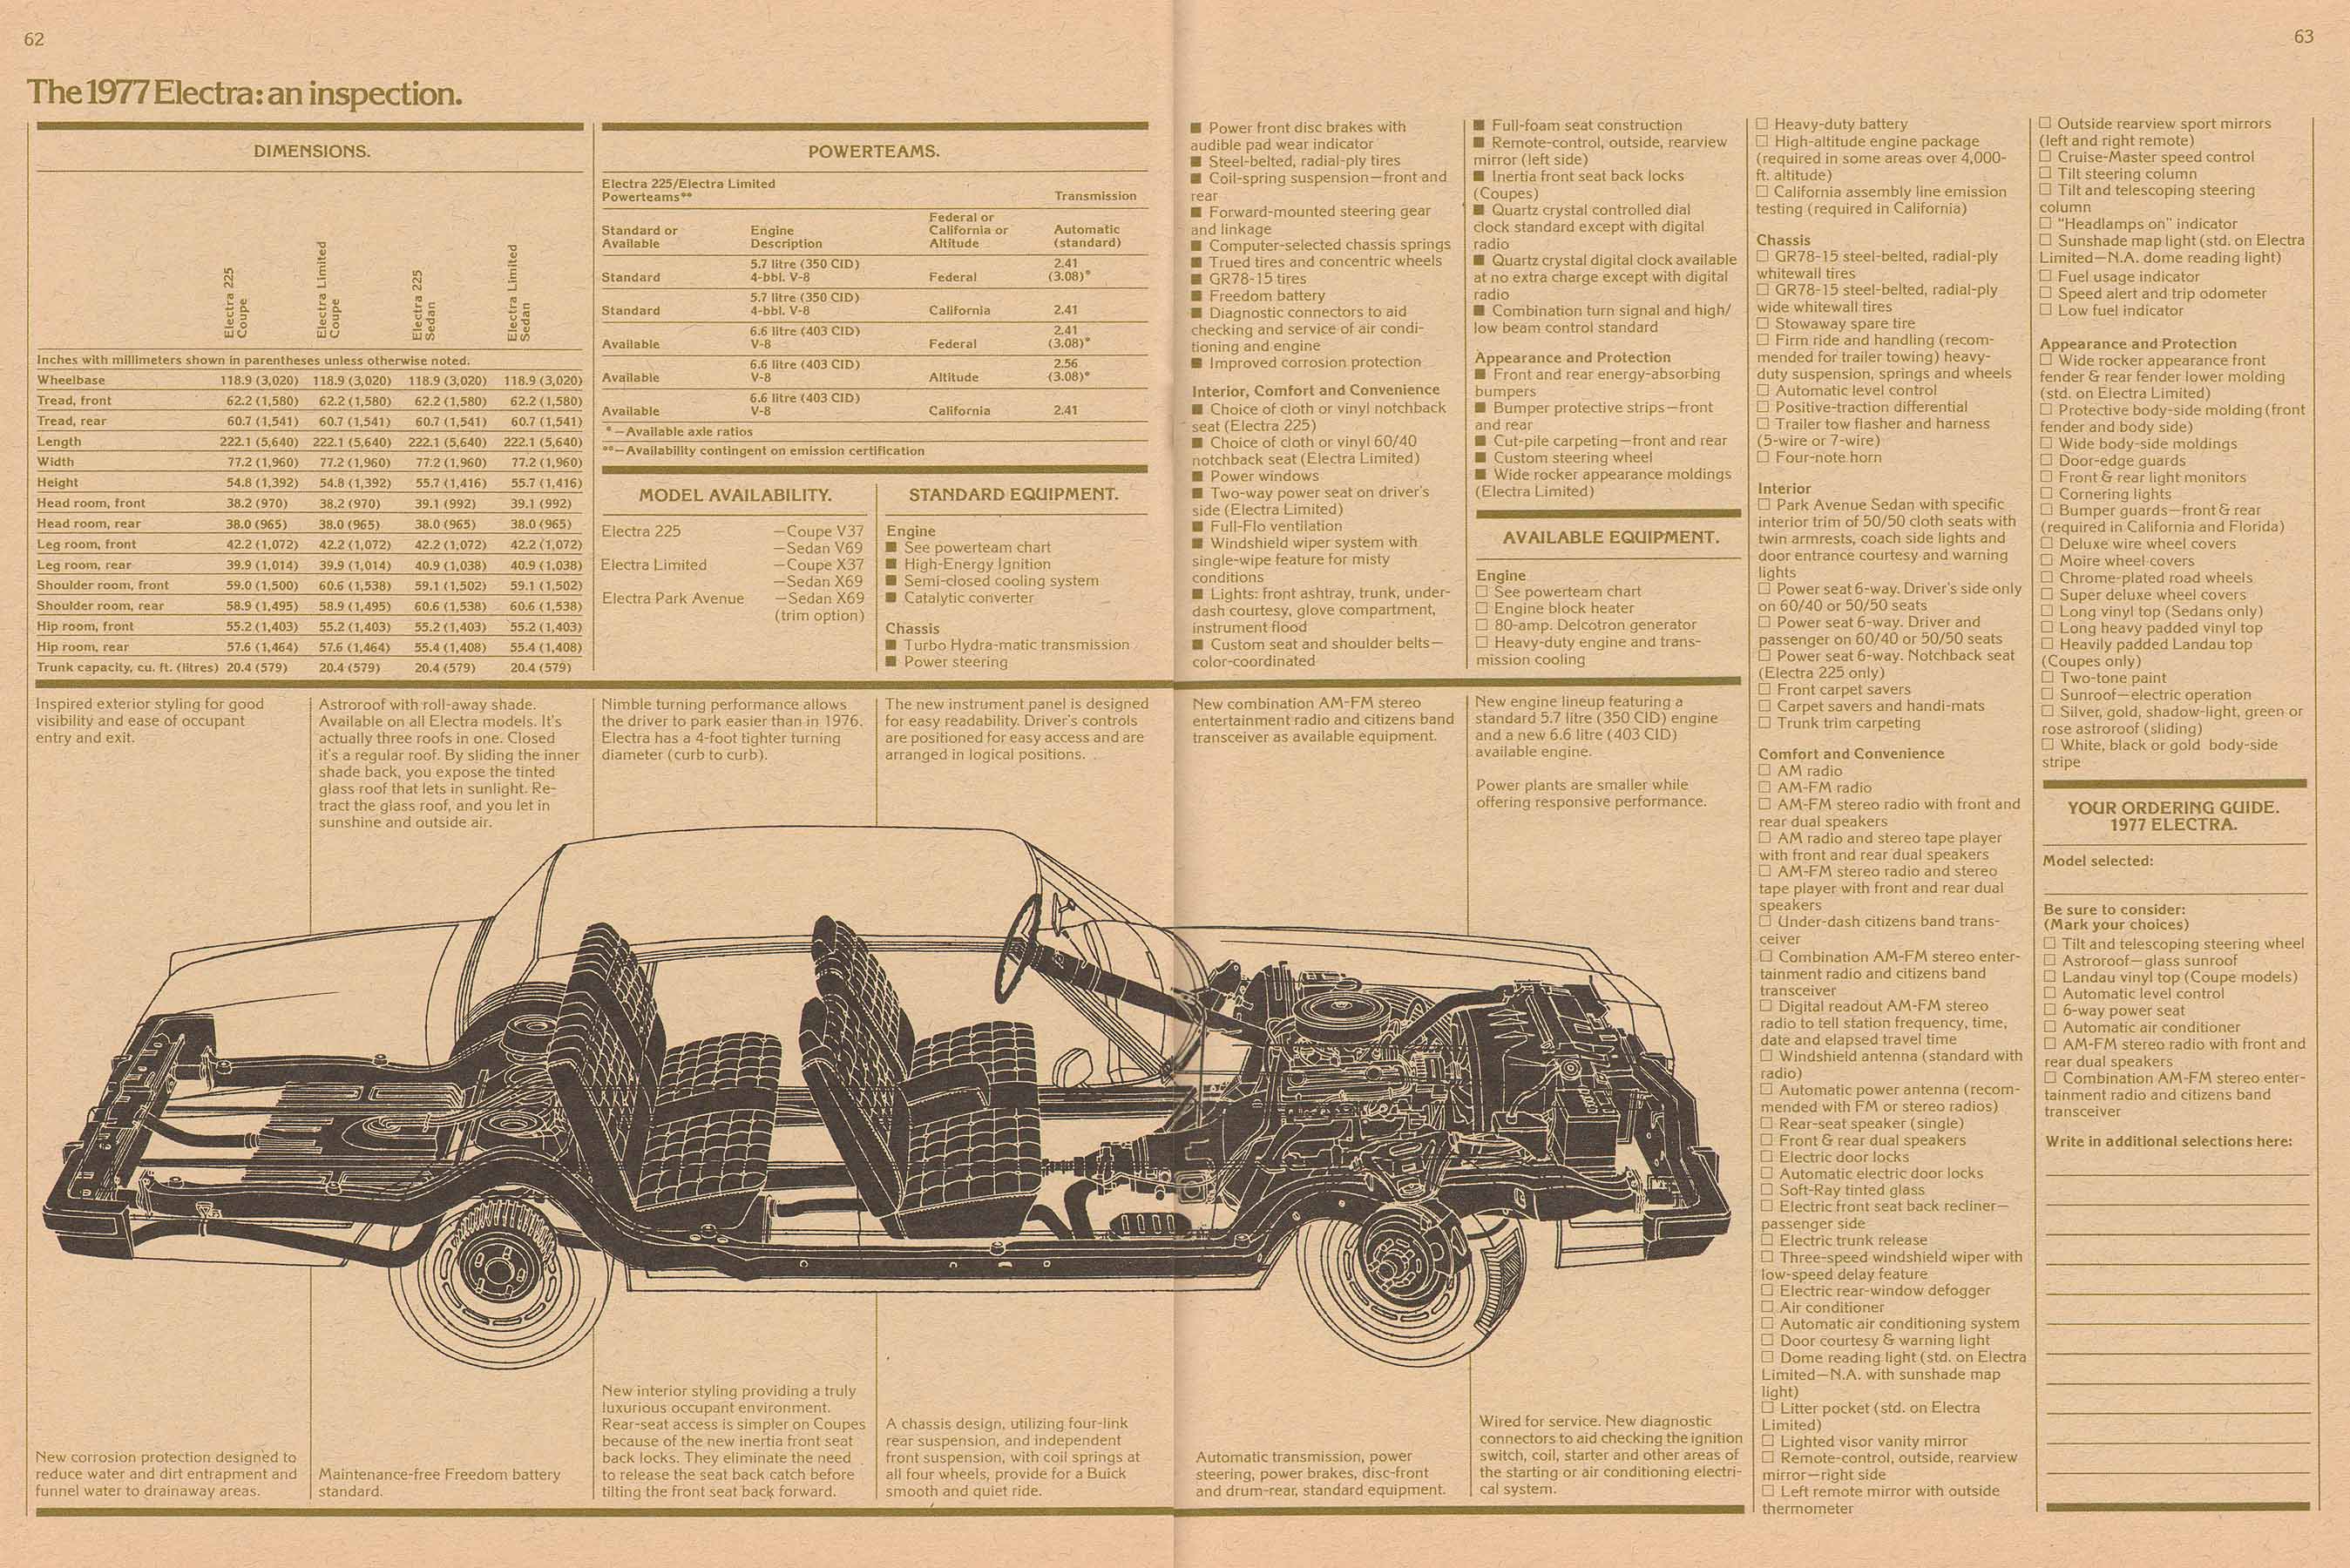 1977 Buick Full Line-62-63